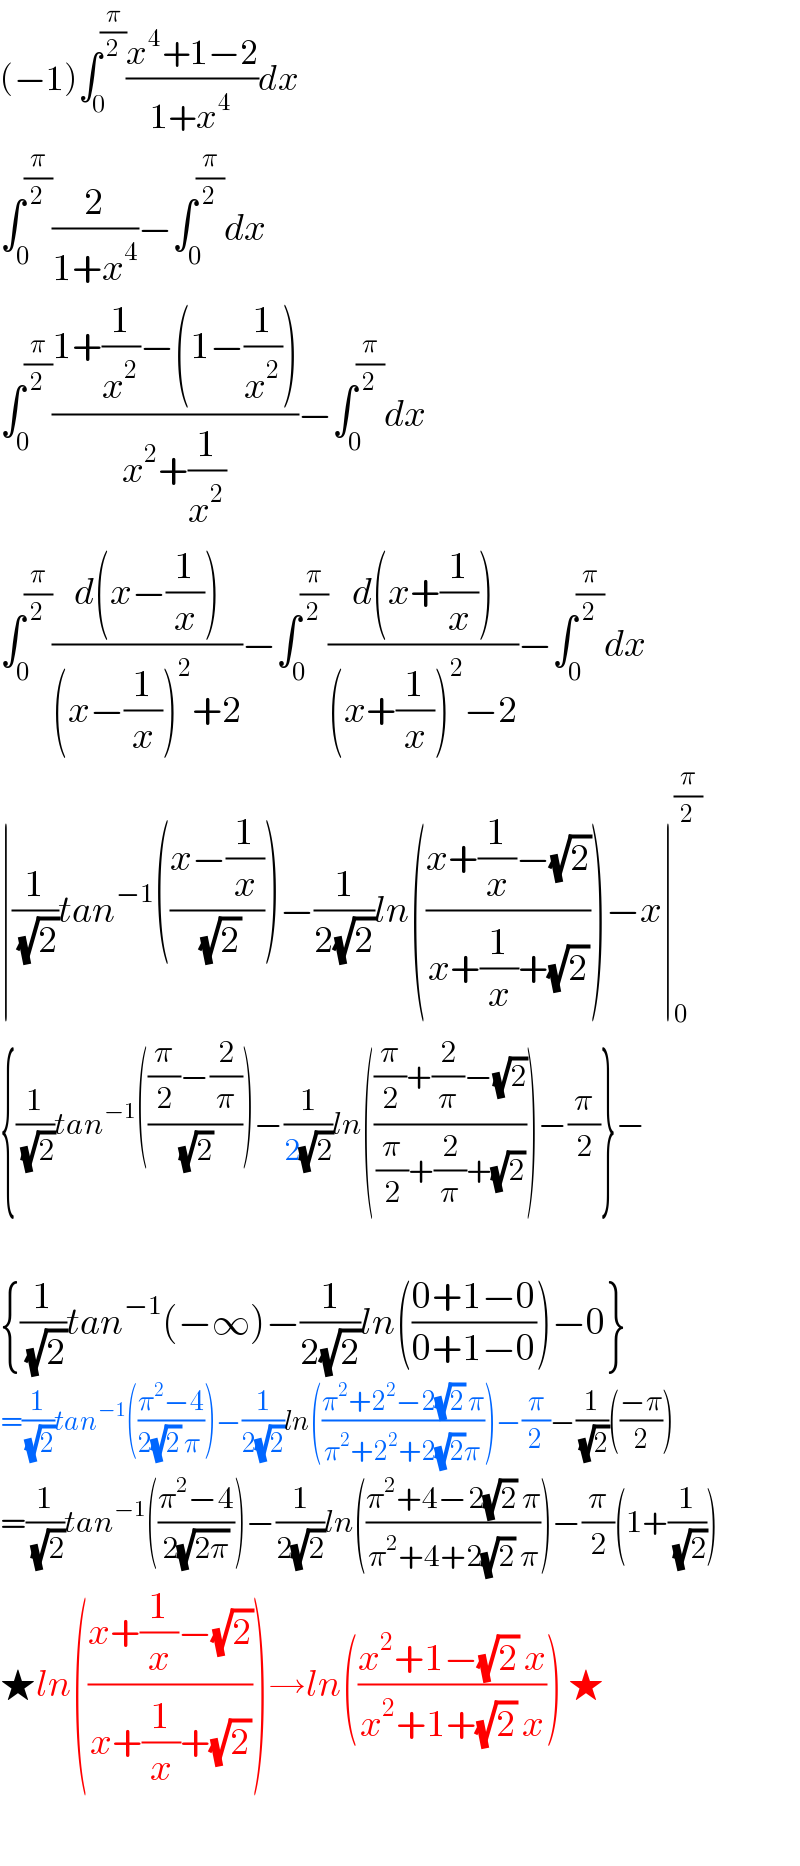 (−1)∫_0 ^(π/2) ((x^4 +1−2)/(1+x^4 ))dx  ∫_0 ^(π/2) (2/(1+x^4 ))−∫_0 ^(π/2) dx  ∫_0 ^(π/2) ((1+(1/x^2 )−(1−(1/x^2 )))/(x^2 +(1/x^2 )))−∫_0 ^(π/2) dx  ∫_0 ^(π/2) ((d(x−(1/x)))/((x−(1/x))^2 +2))−∫_0 ^(π/2) ((d(x+(1/x)))/((x+(1/x))^2 −2))−∫_0 ^(π/2) dx  ∣(1/(√2))tan^(−1) (((x−(1/x))/(√2)))−(1/(2(√2)))ln(((x+(1/x)−(√2))/(x+(1/x)+(√2))))−x∣_0 ^(π/2)   {(1/(√2))tan^(−1) ((((π/2)−(2/π))/(√2)))−(1/(2(√2)))ln((((π/2)+(2/π)−(√2))/((π/2)+(2/π)+(√2))))−(π/2)}−    {(1/(√2))tan^(−1) (−∞)−(1/(2(√2)))ln(((0+1−0)/(0+1−0)))−0}  =(1/(√2))tan^(−1) (((π^2 −4)/(2(√2) π)))−(1/(2(√2)))ln(((π^2 +2^2 −2(√2) π)/(π^2 +2^2 +2(√2)π)))−(π/2)−(1/(√2))(((−π)/2))  =(1/(√2))tan^(−1) (((π^2 −4)/(2(√(2π)))))−(1/(2(√2)))ln(((π^2 +4−2(√2) π)/(π^2 +4+2(√2) π)))−(π/2)(1+(1/(√2)))  ★ln(((x+(1/x)−(√2))/(x+(1/x)+(√2))))→ln(((x^2 +1−(√2) x)/(x^2 +1+(√2) x))) ★    